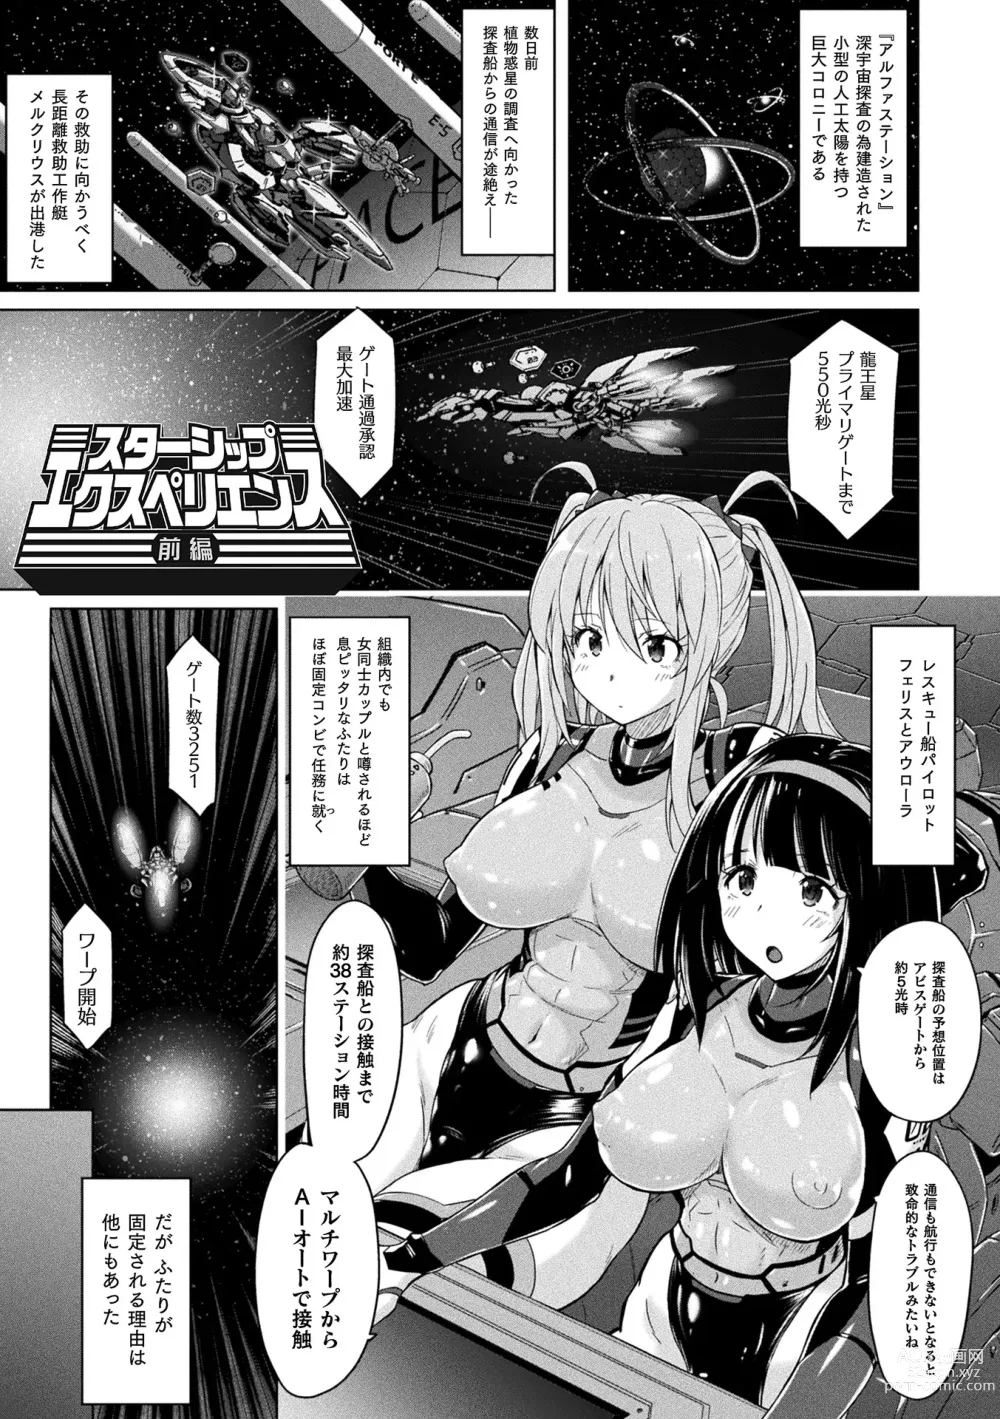 Page 5 of manga Picchiri Pantsism